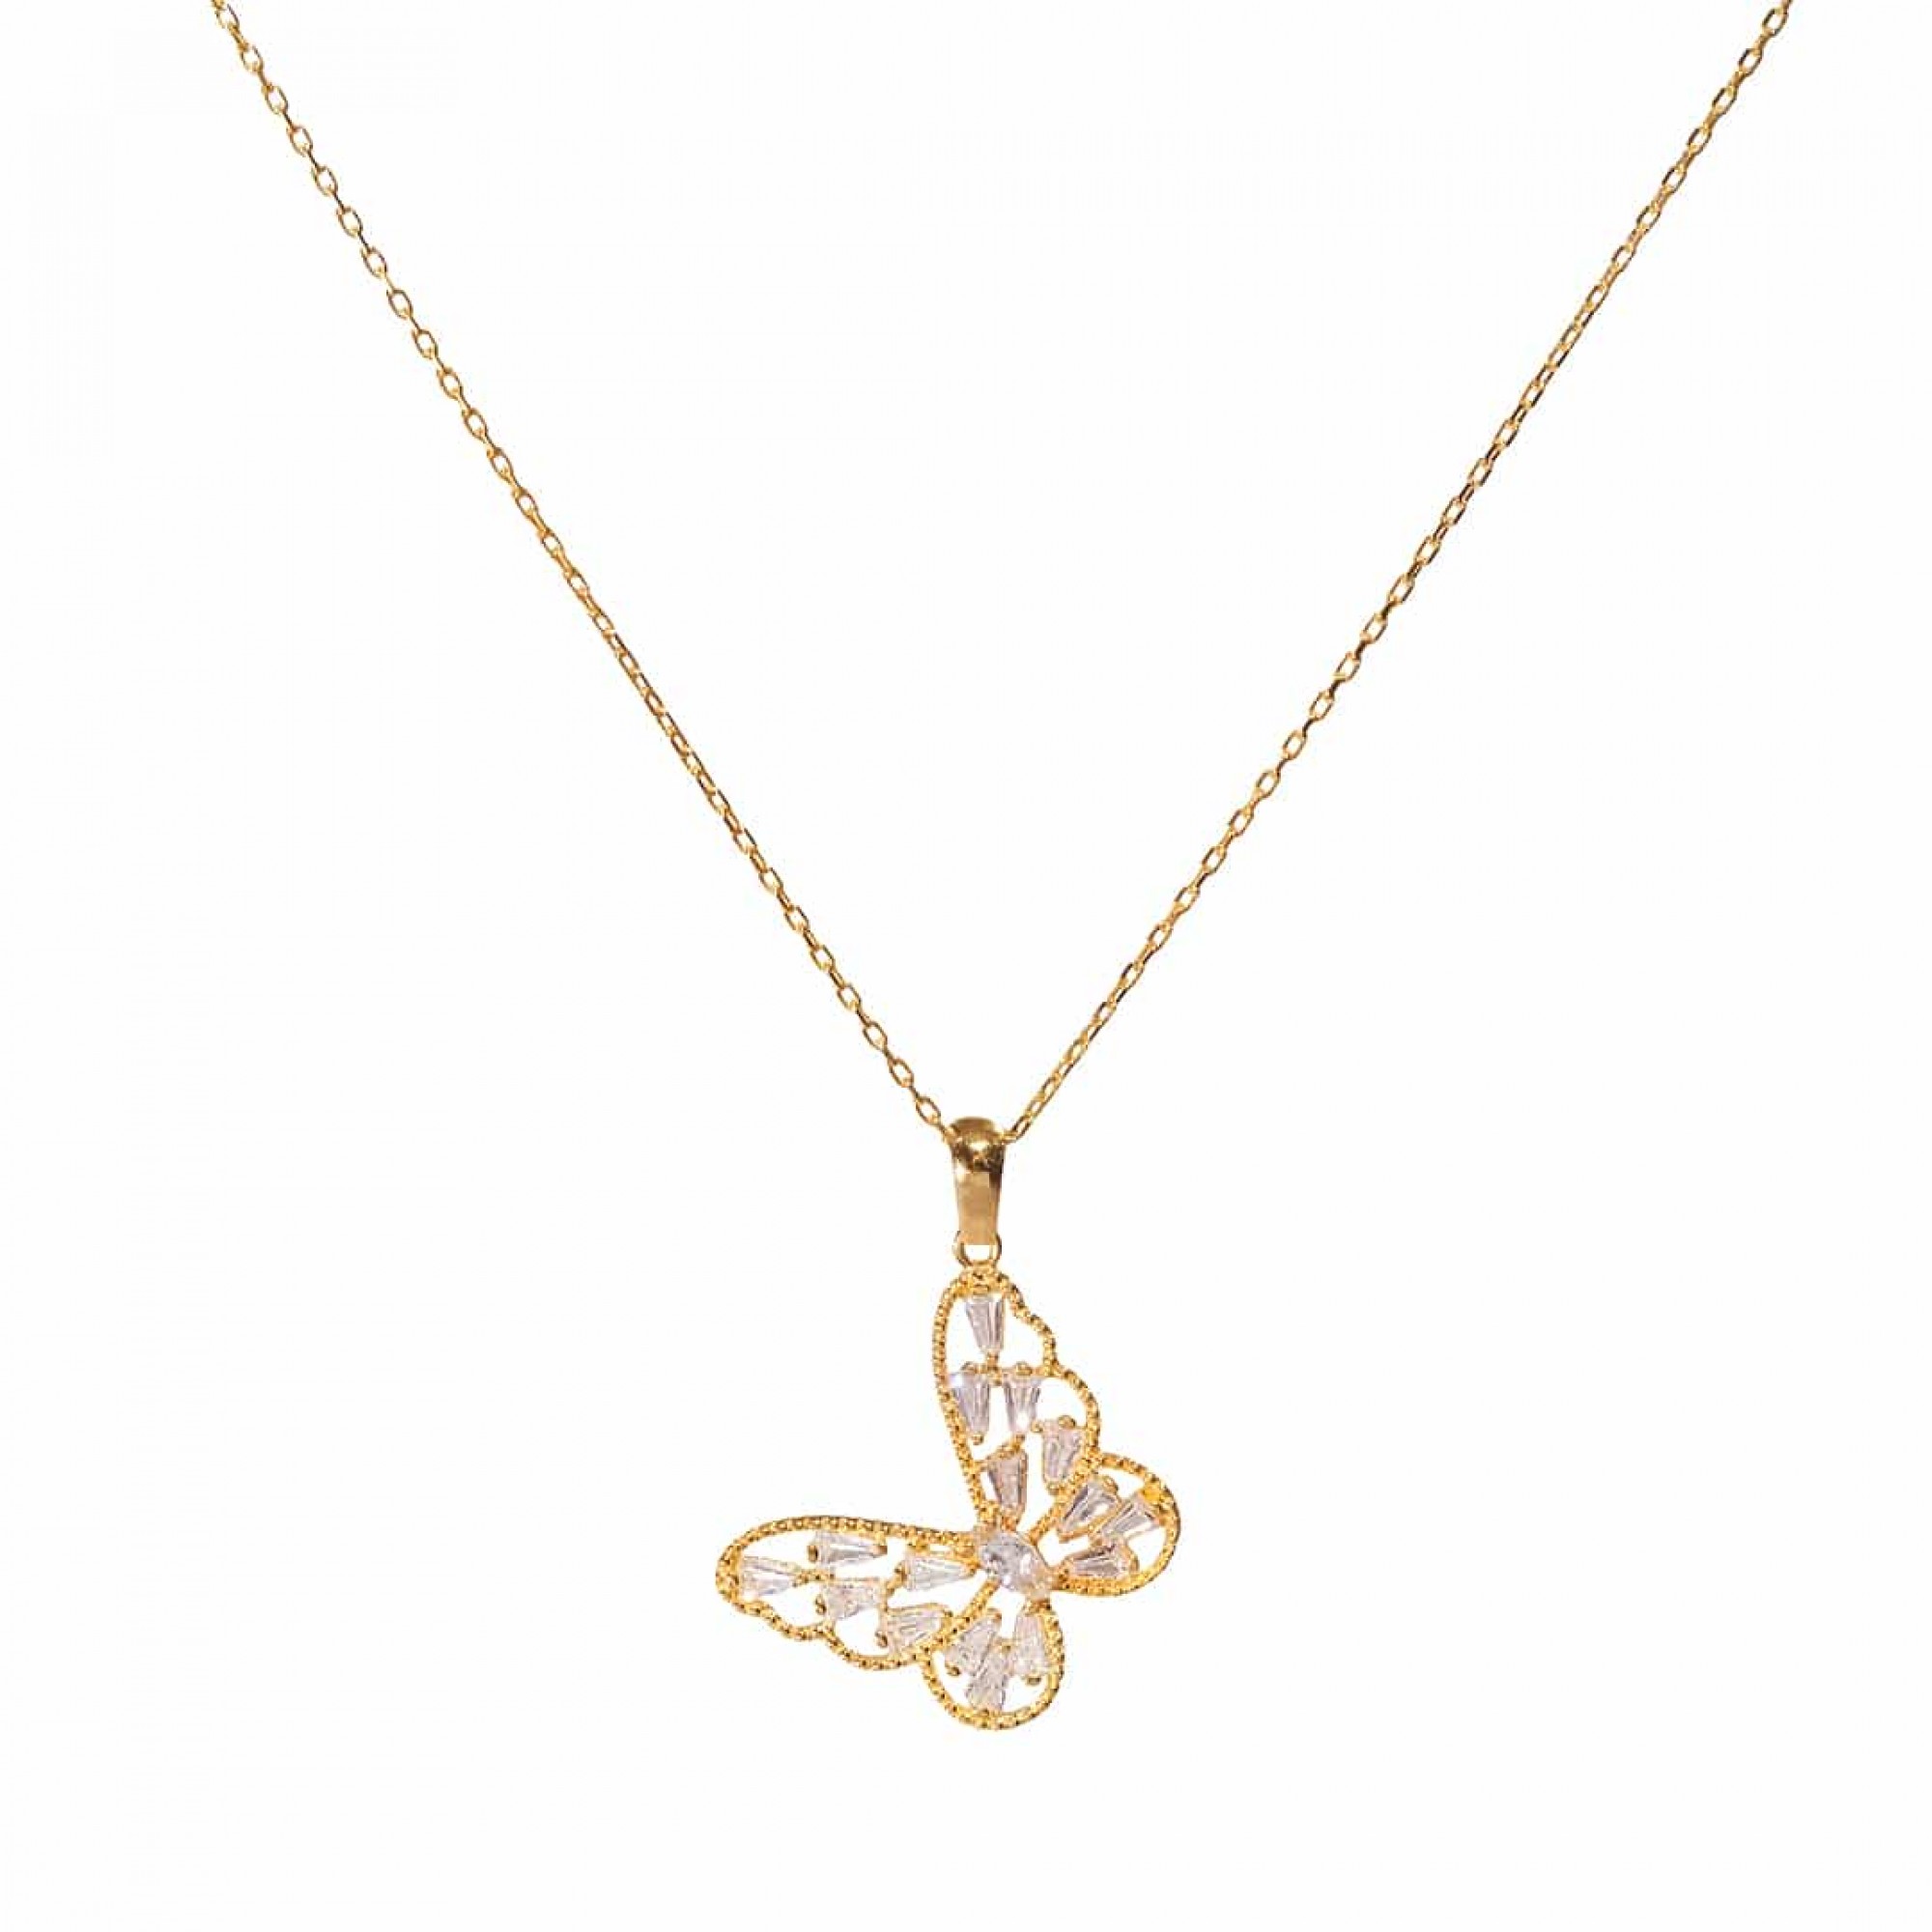 Silberkette 925 mit Schmetterling Anhänger Damenschmuck Halskette in Silber,Gold  - FashionJuwelier